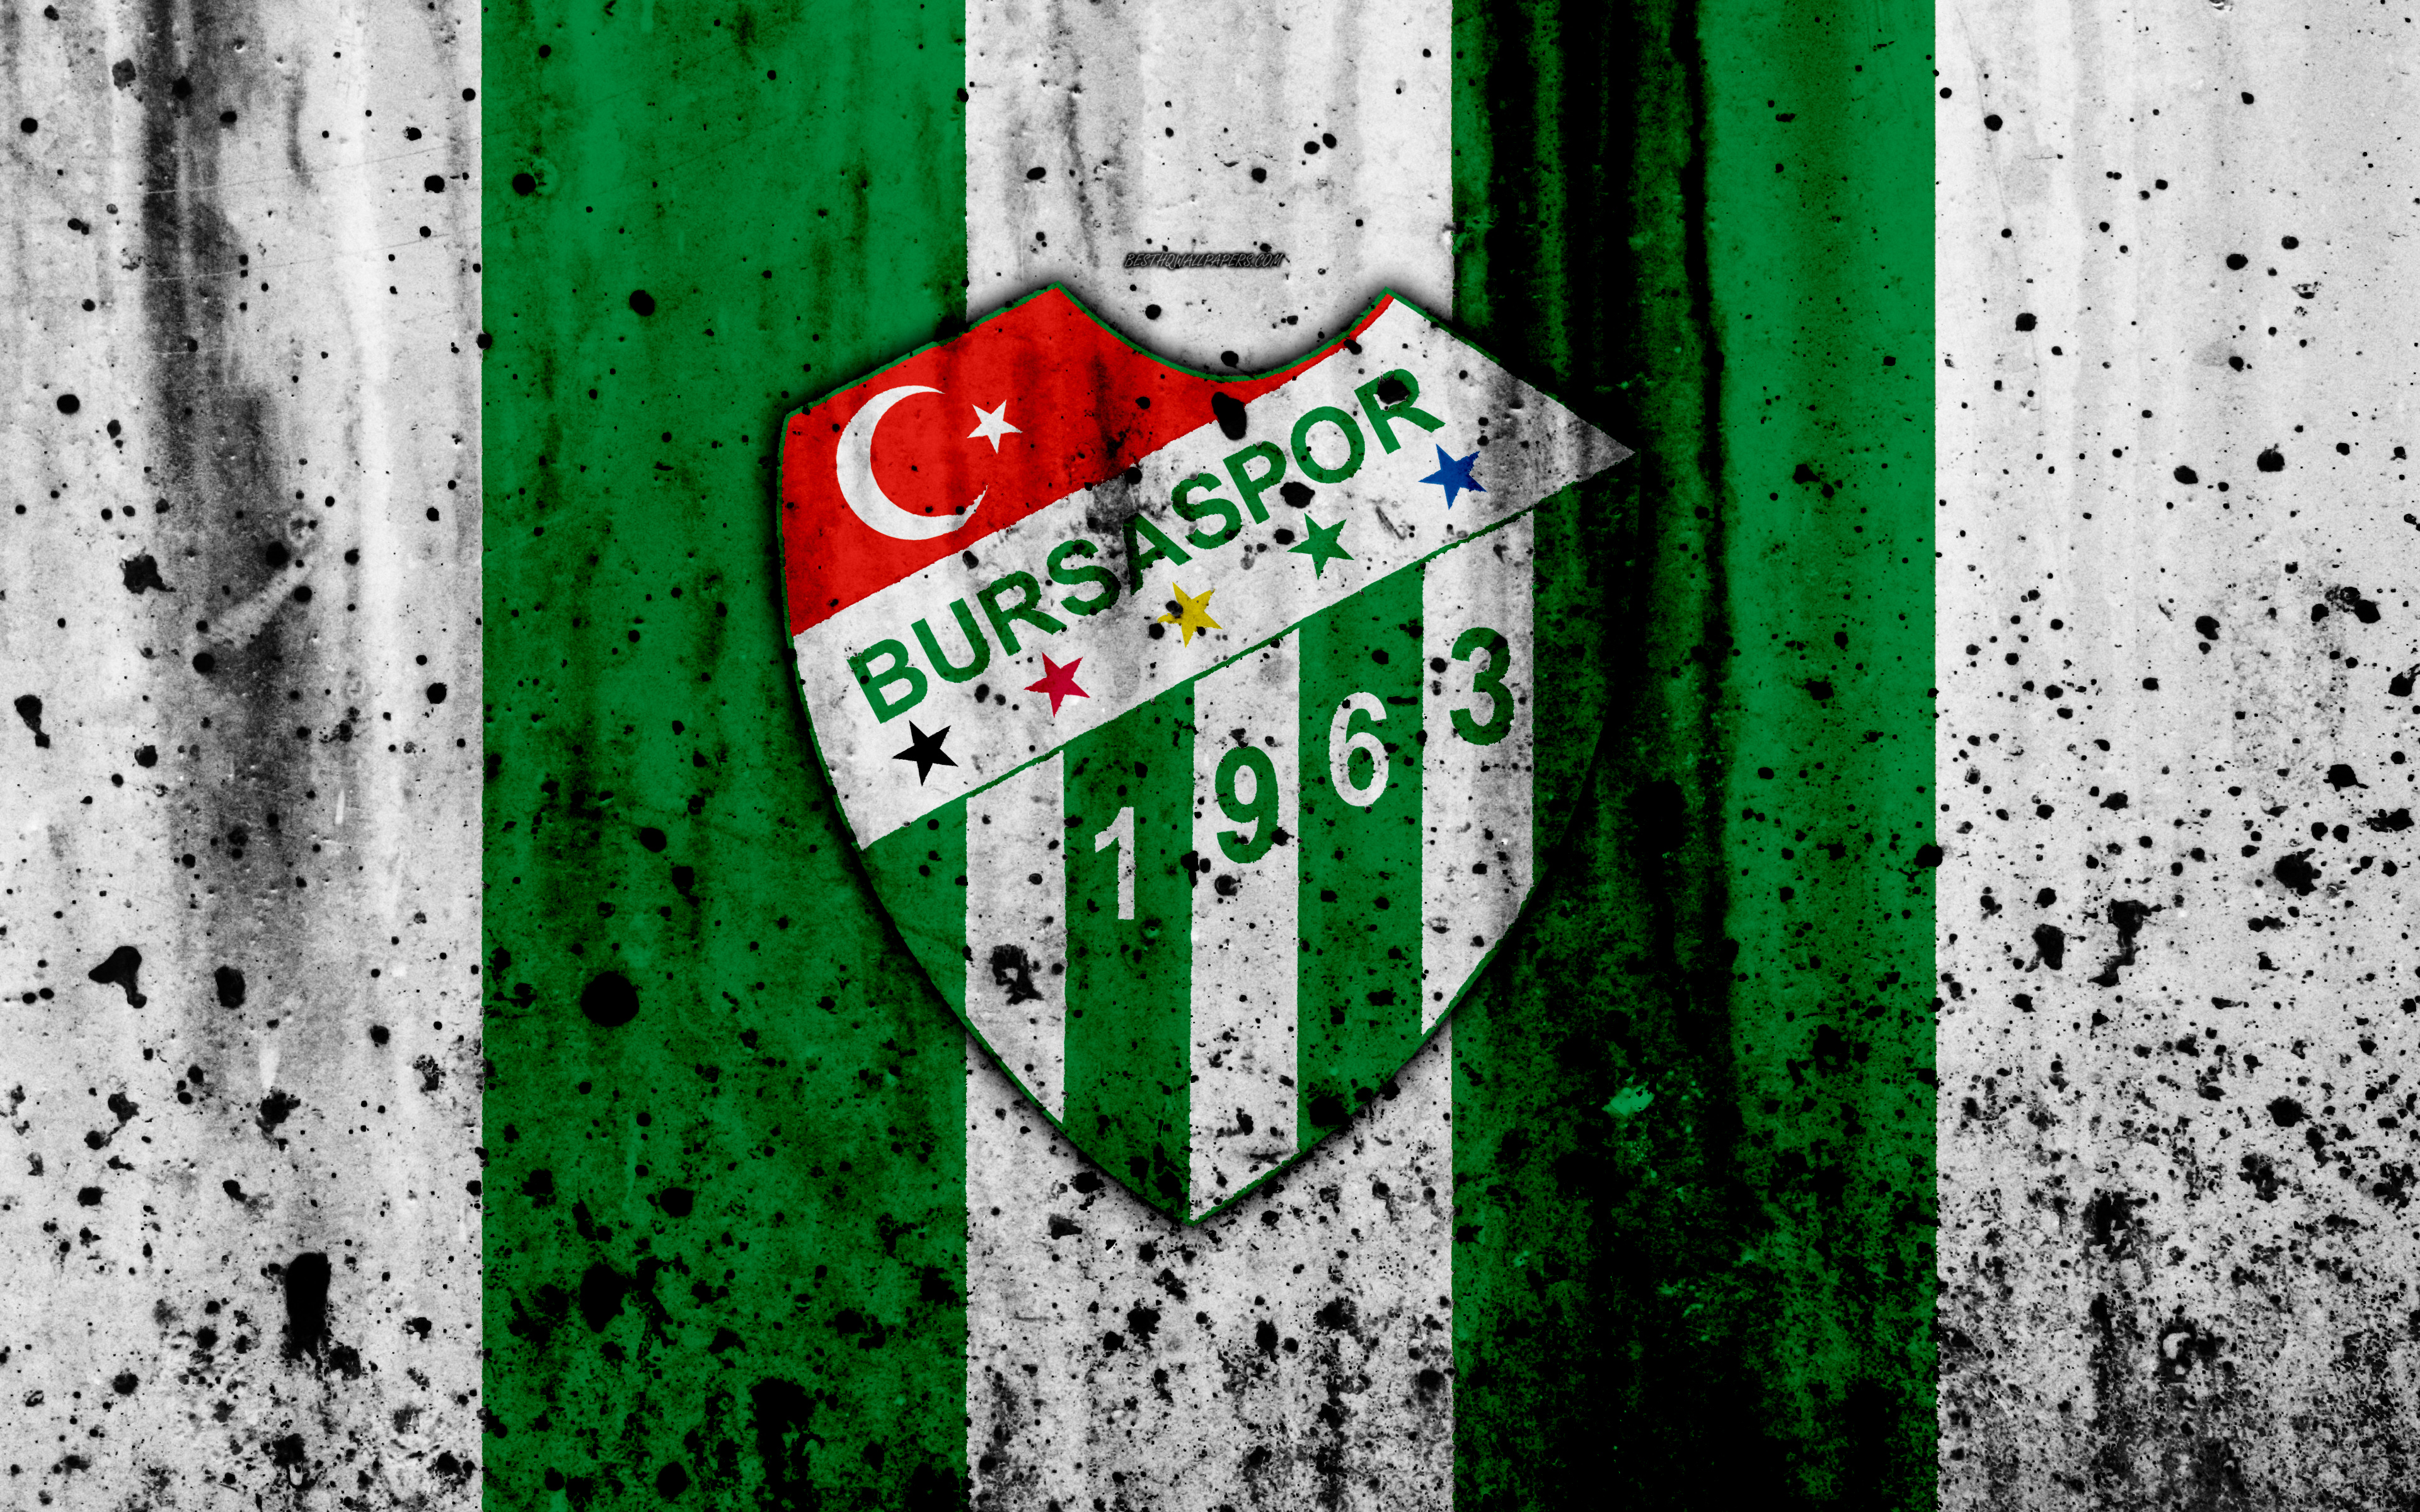 Fc Bursaspor, 4k, Super Lig, Logo, Turkey, Soccer, - Valencia Cf Wallpaper Hd - HD Wallpaper 